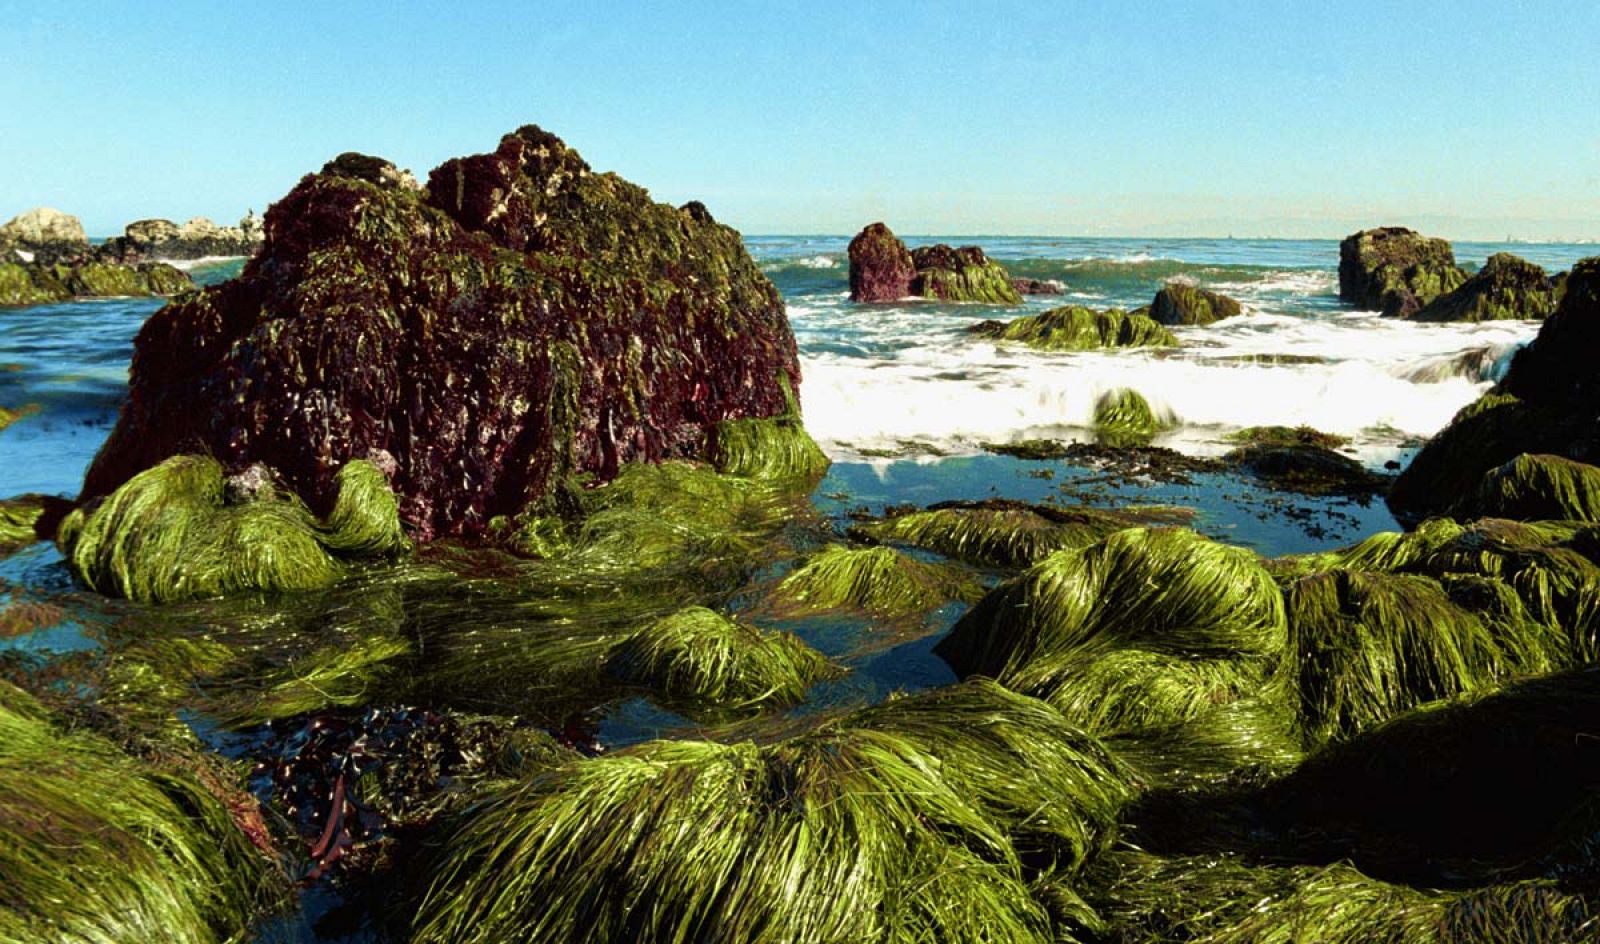 Algas en la costa del Pacífico, en California.